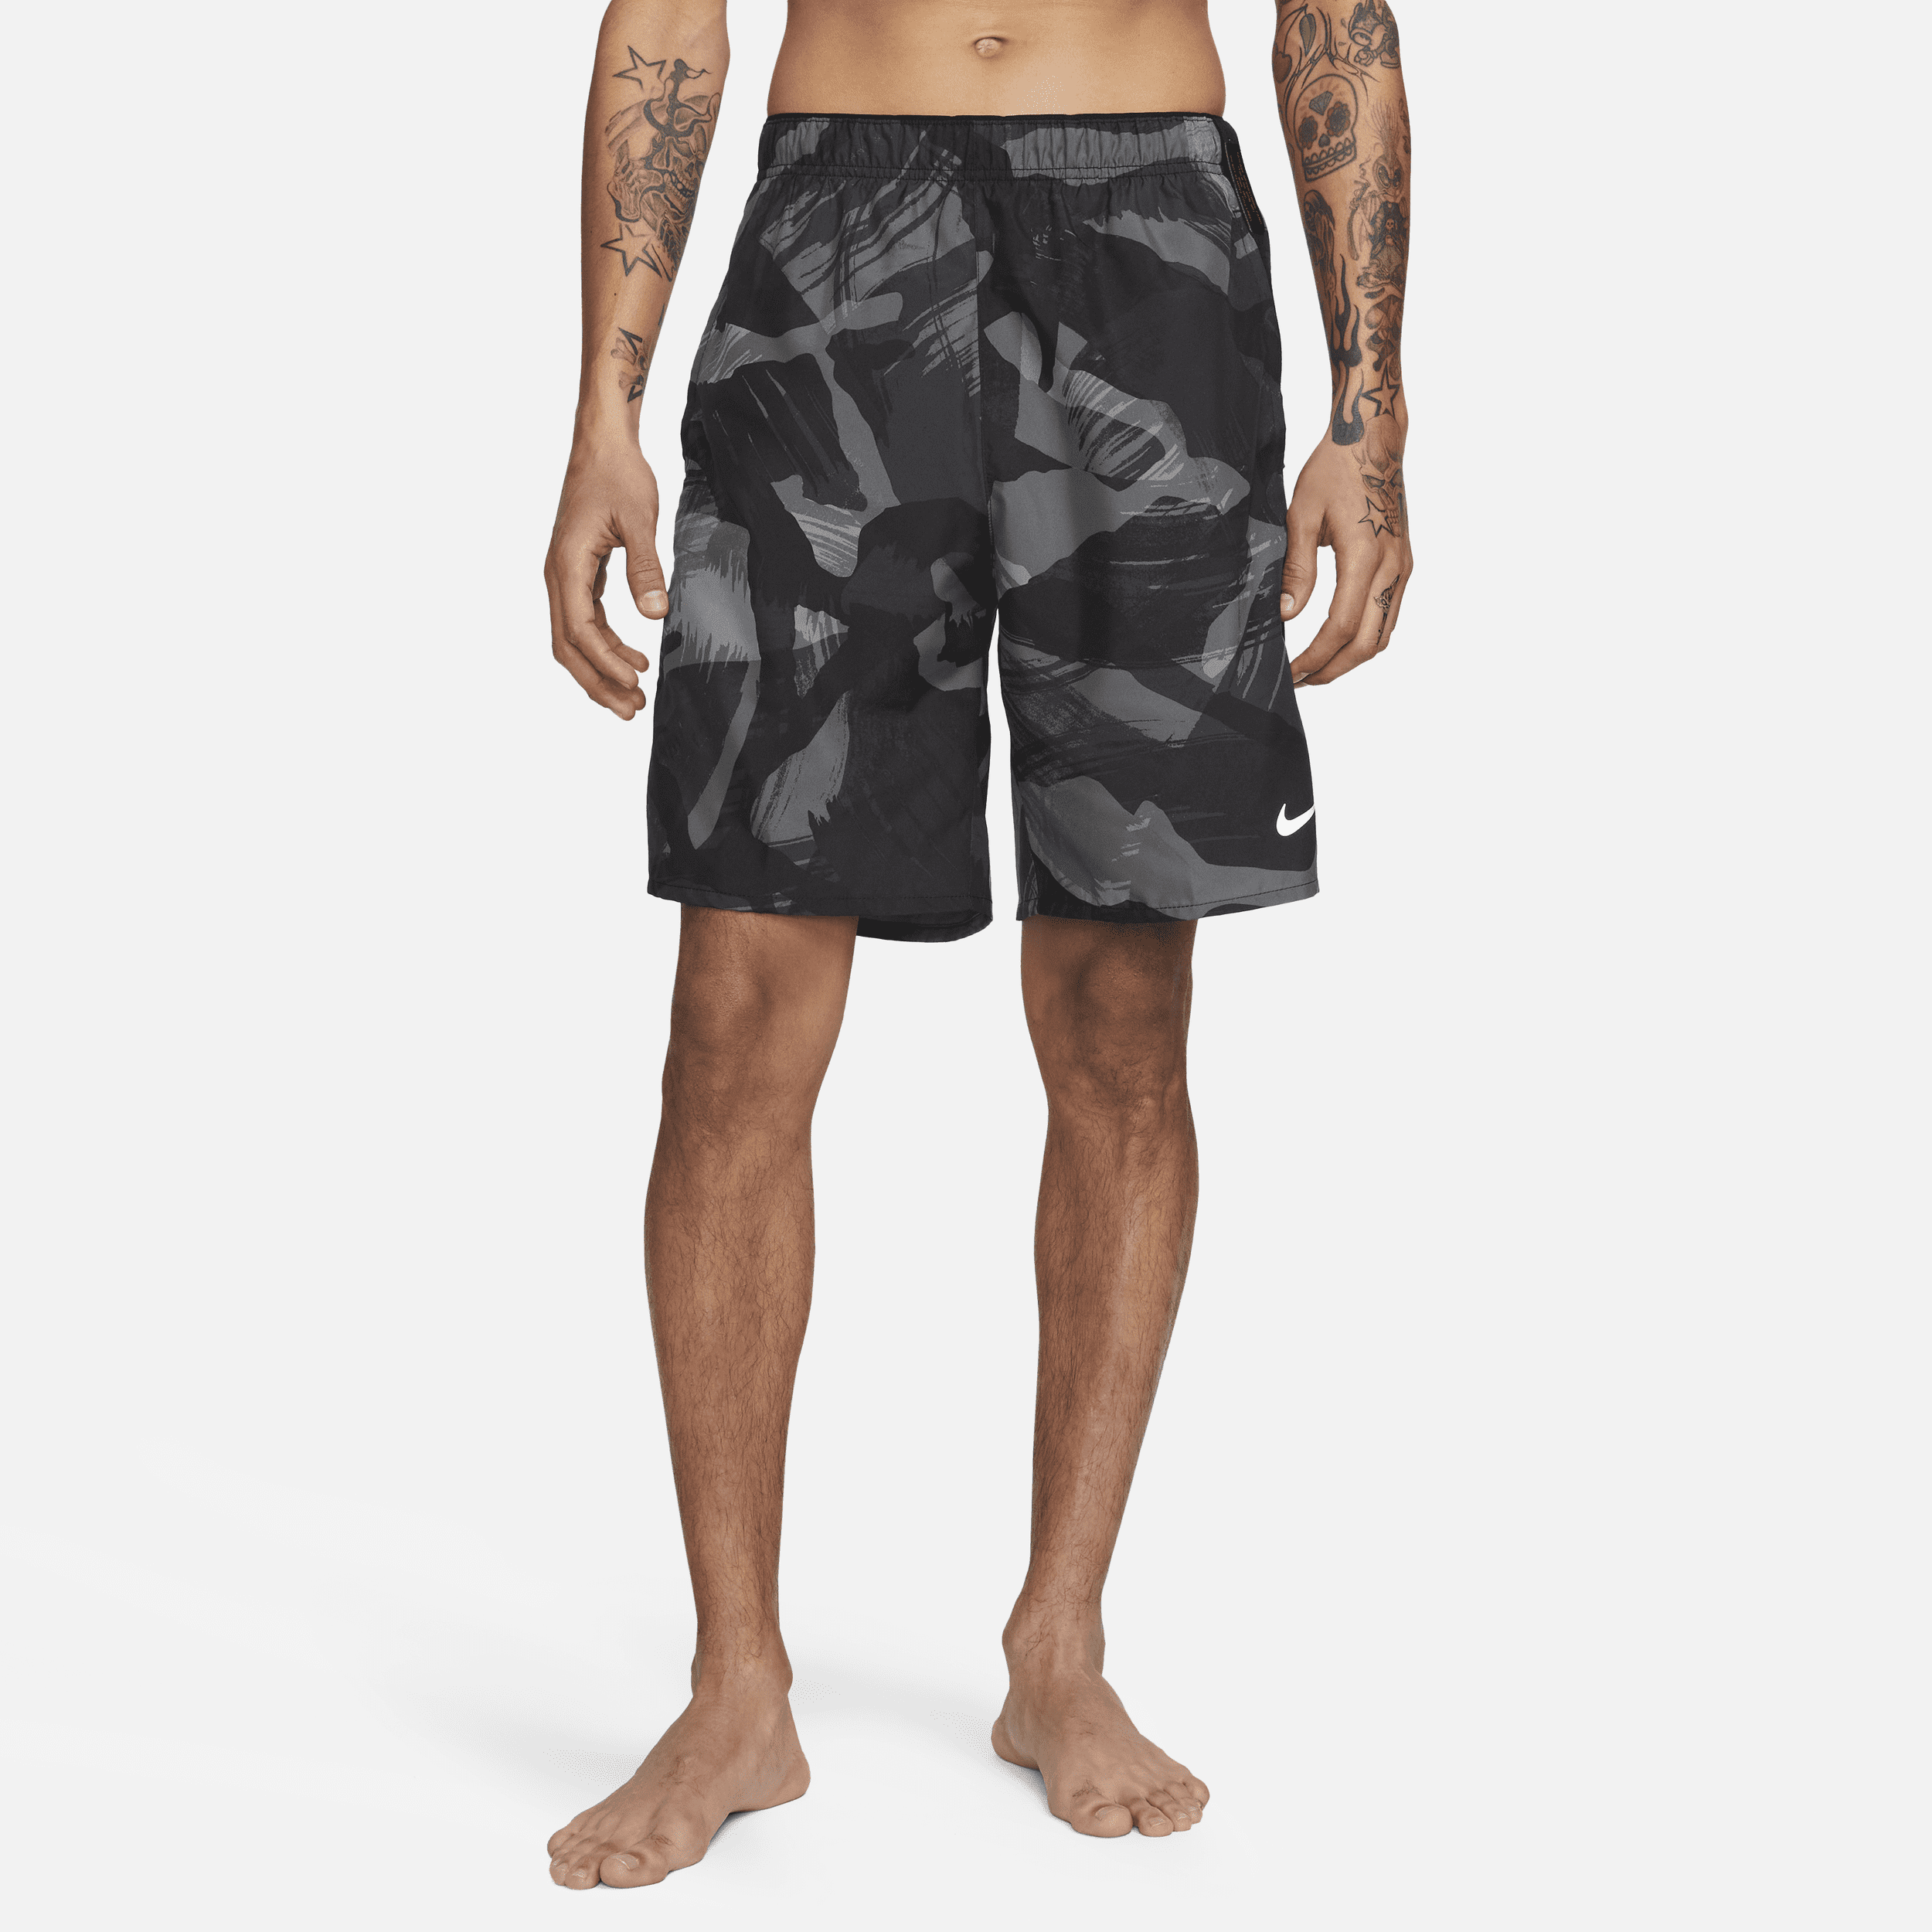 Alsidige Nike Dri-FIT Challenger-shorts (23 cm) uden foring til mænd - sort